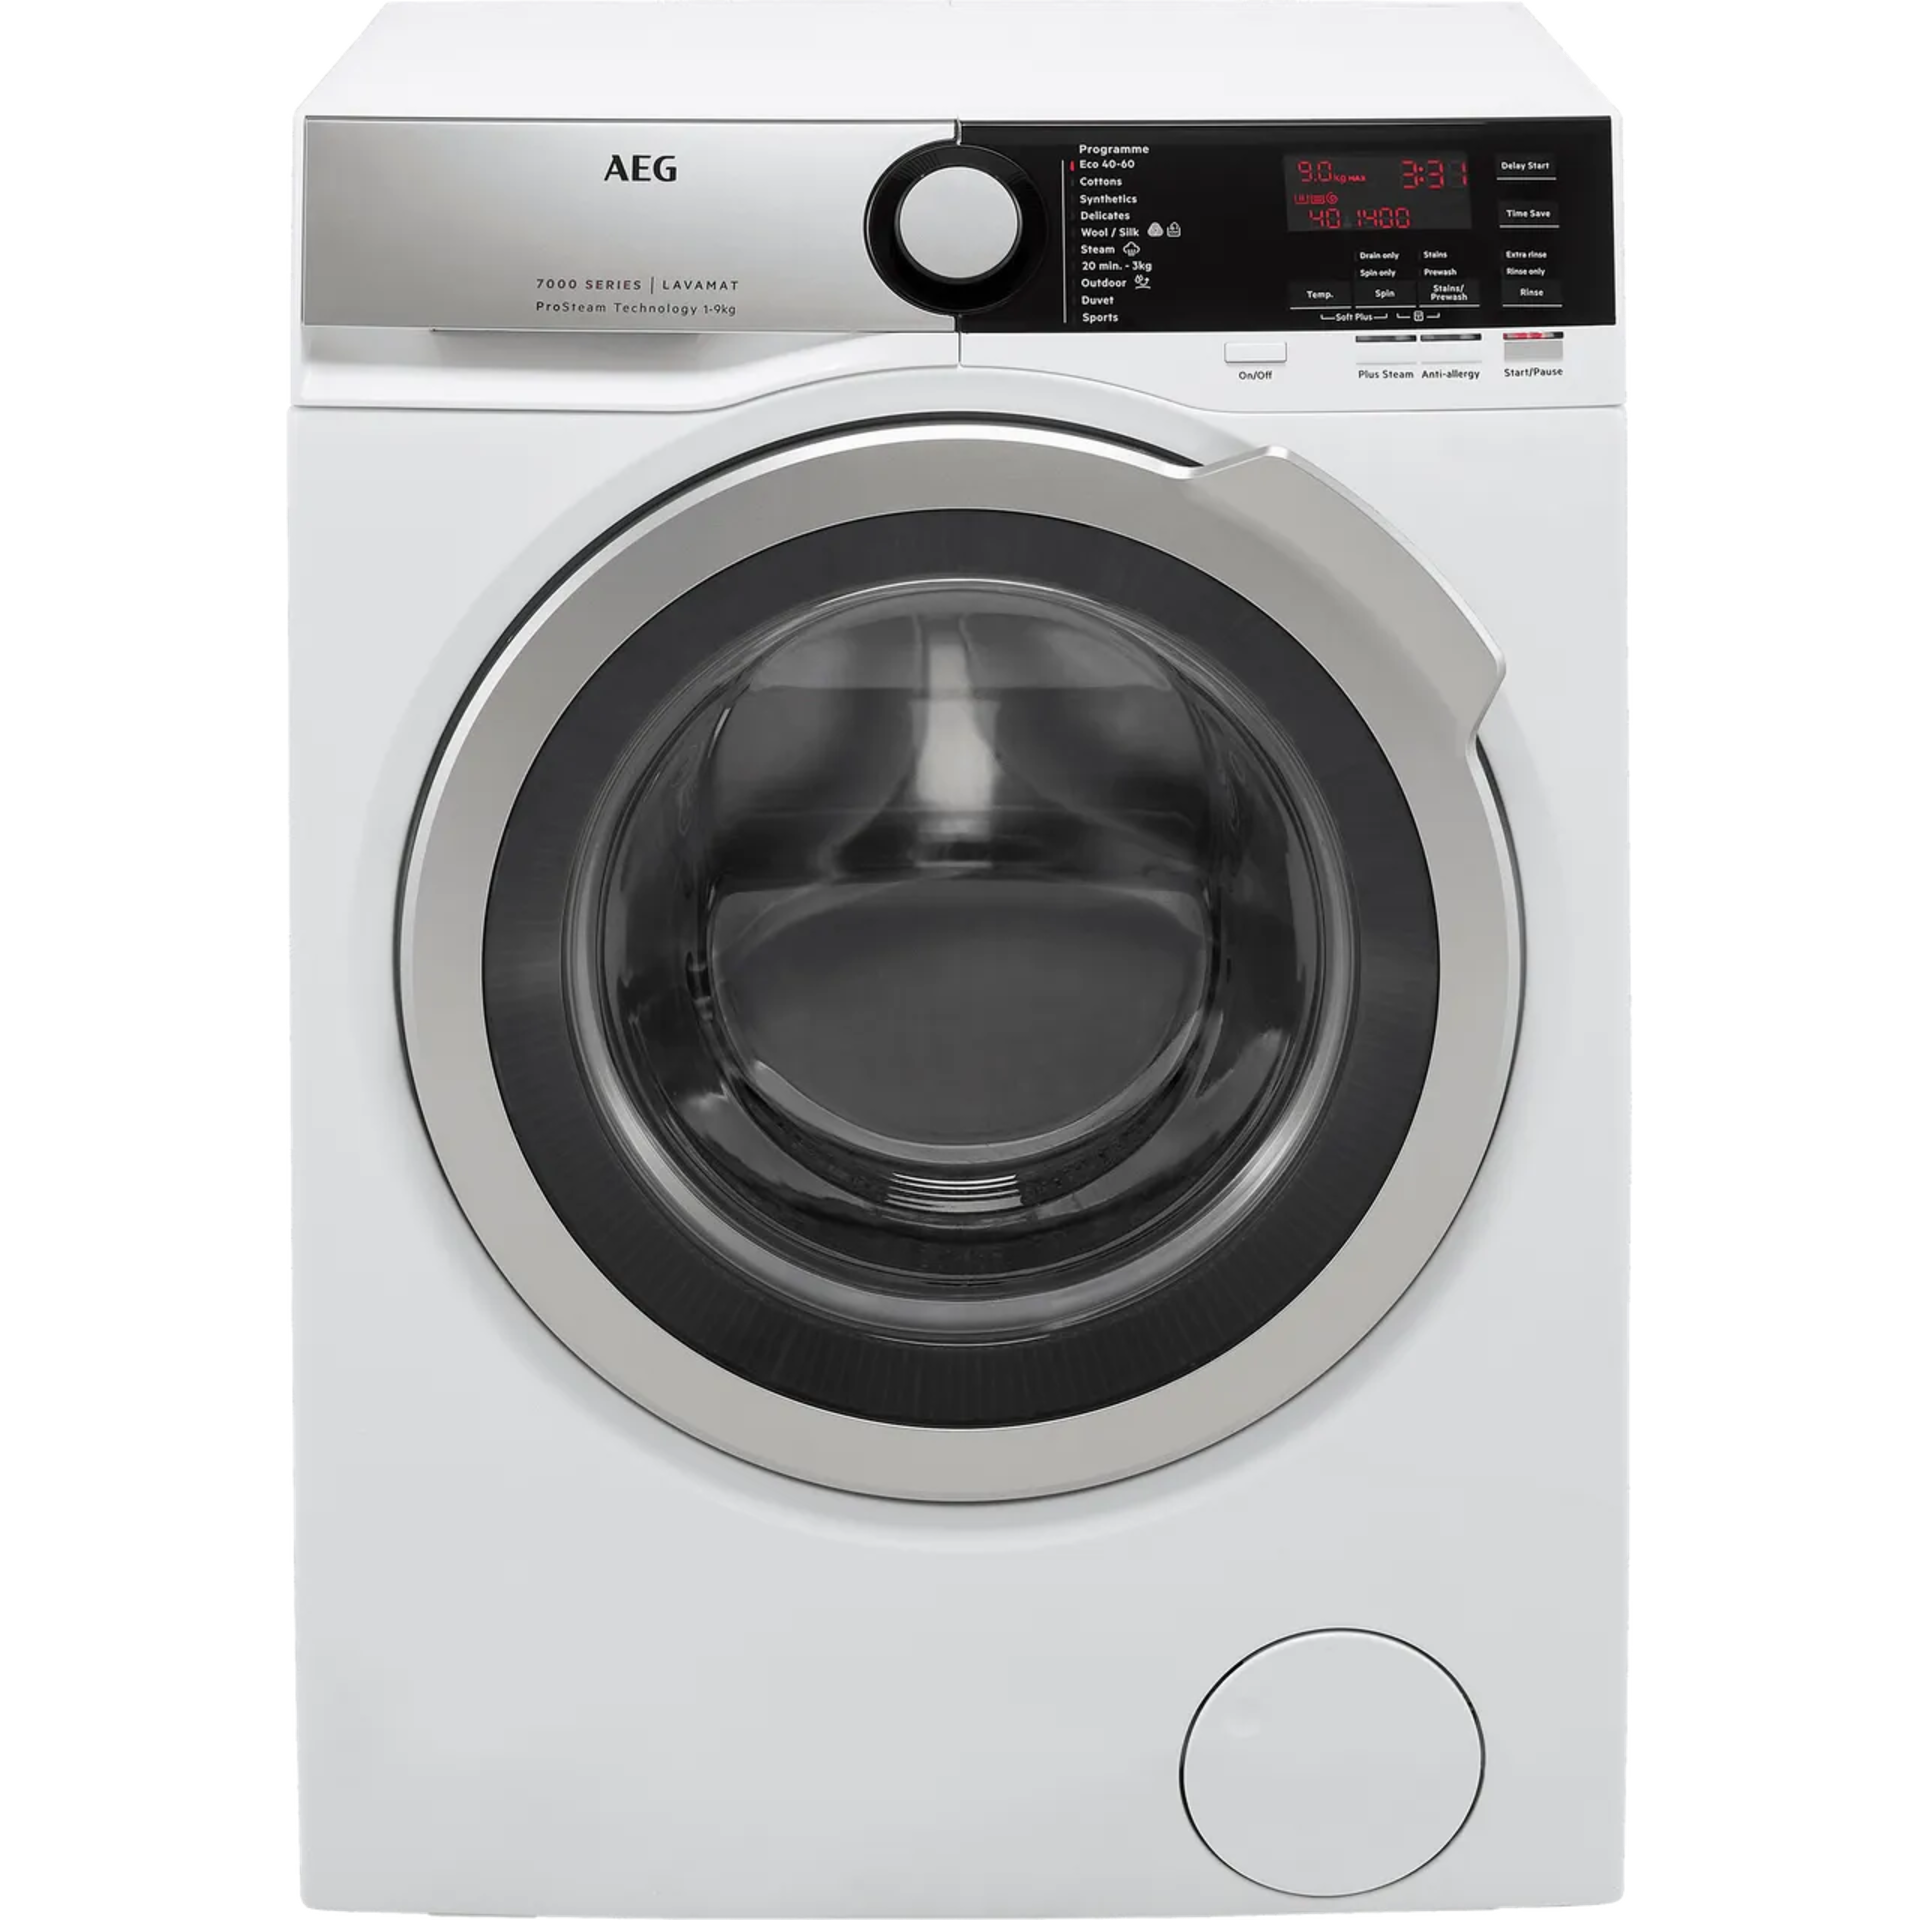 2: AEG Washing Machines Comprising,